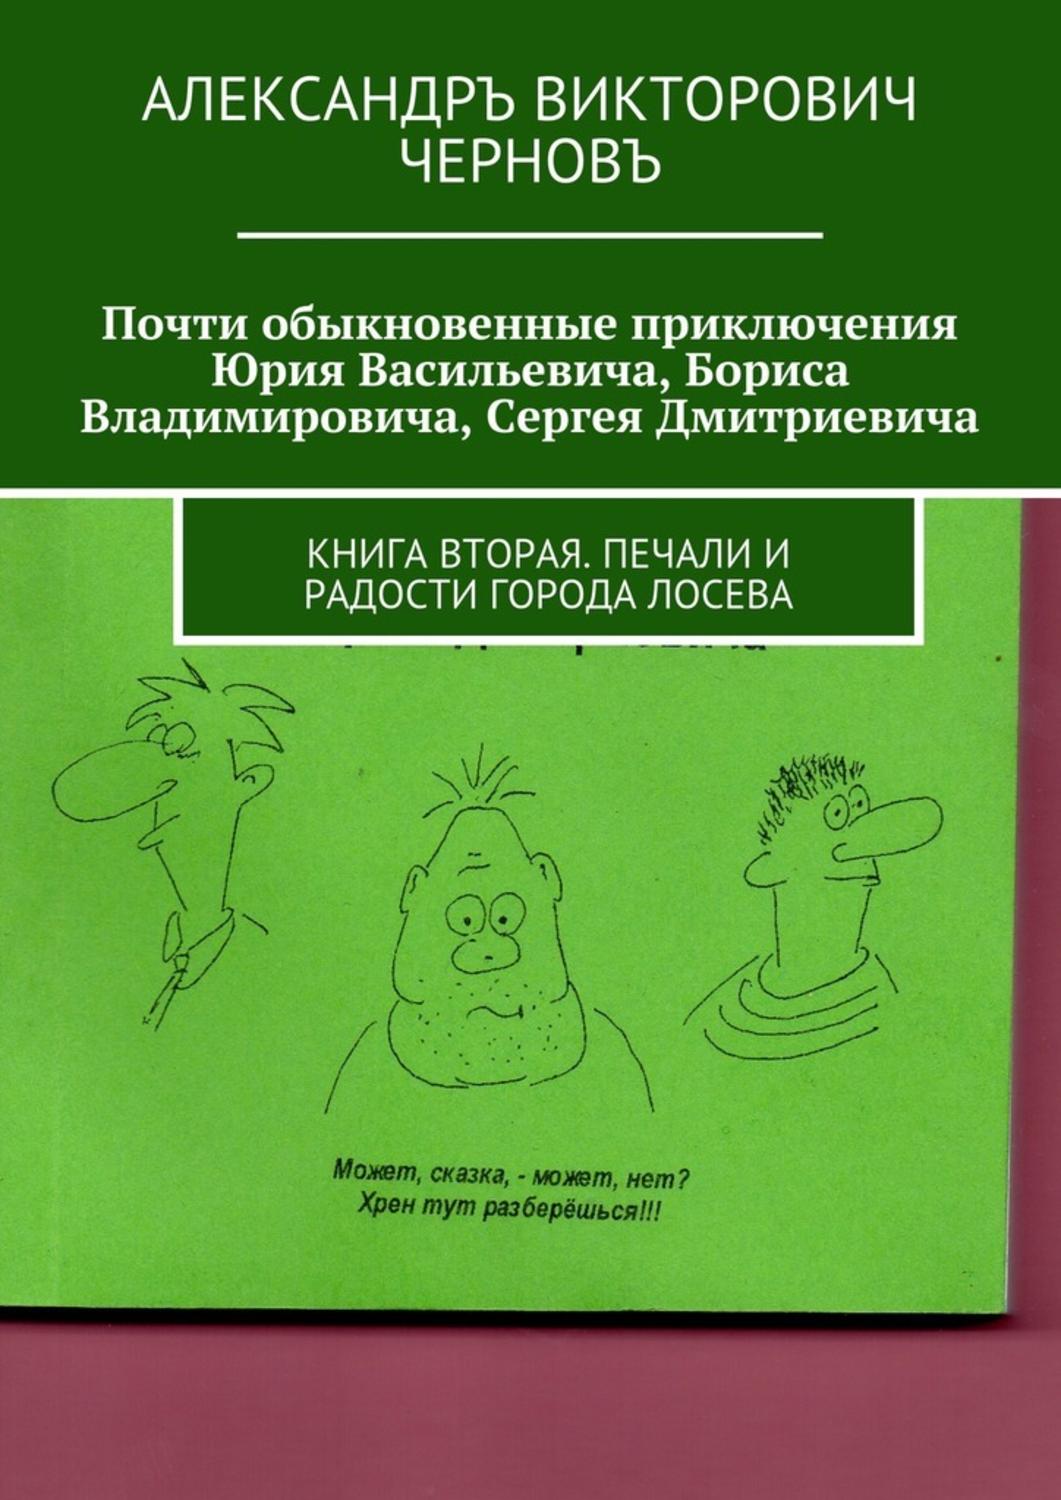 Книга Александра Викторовича